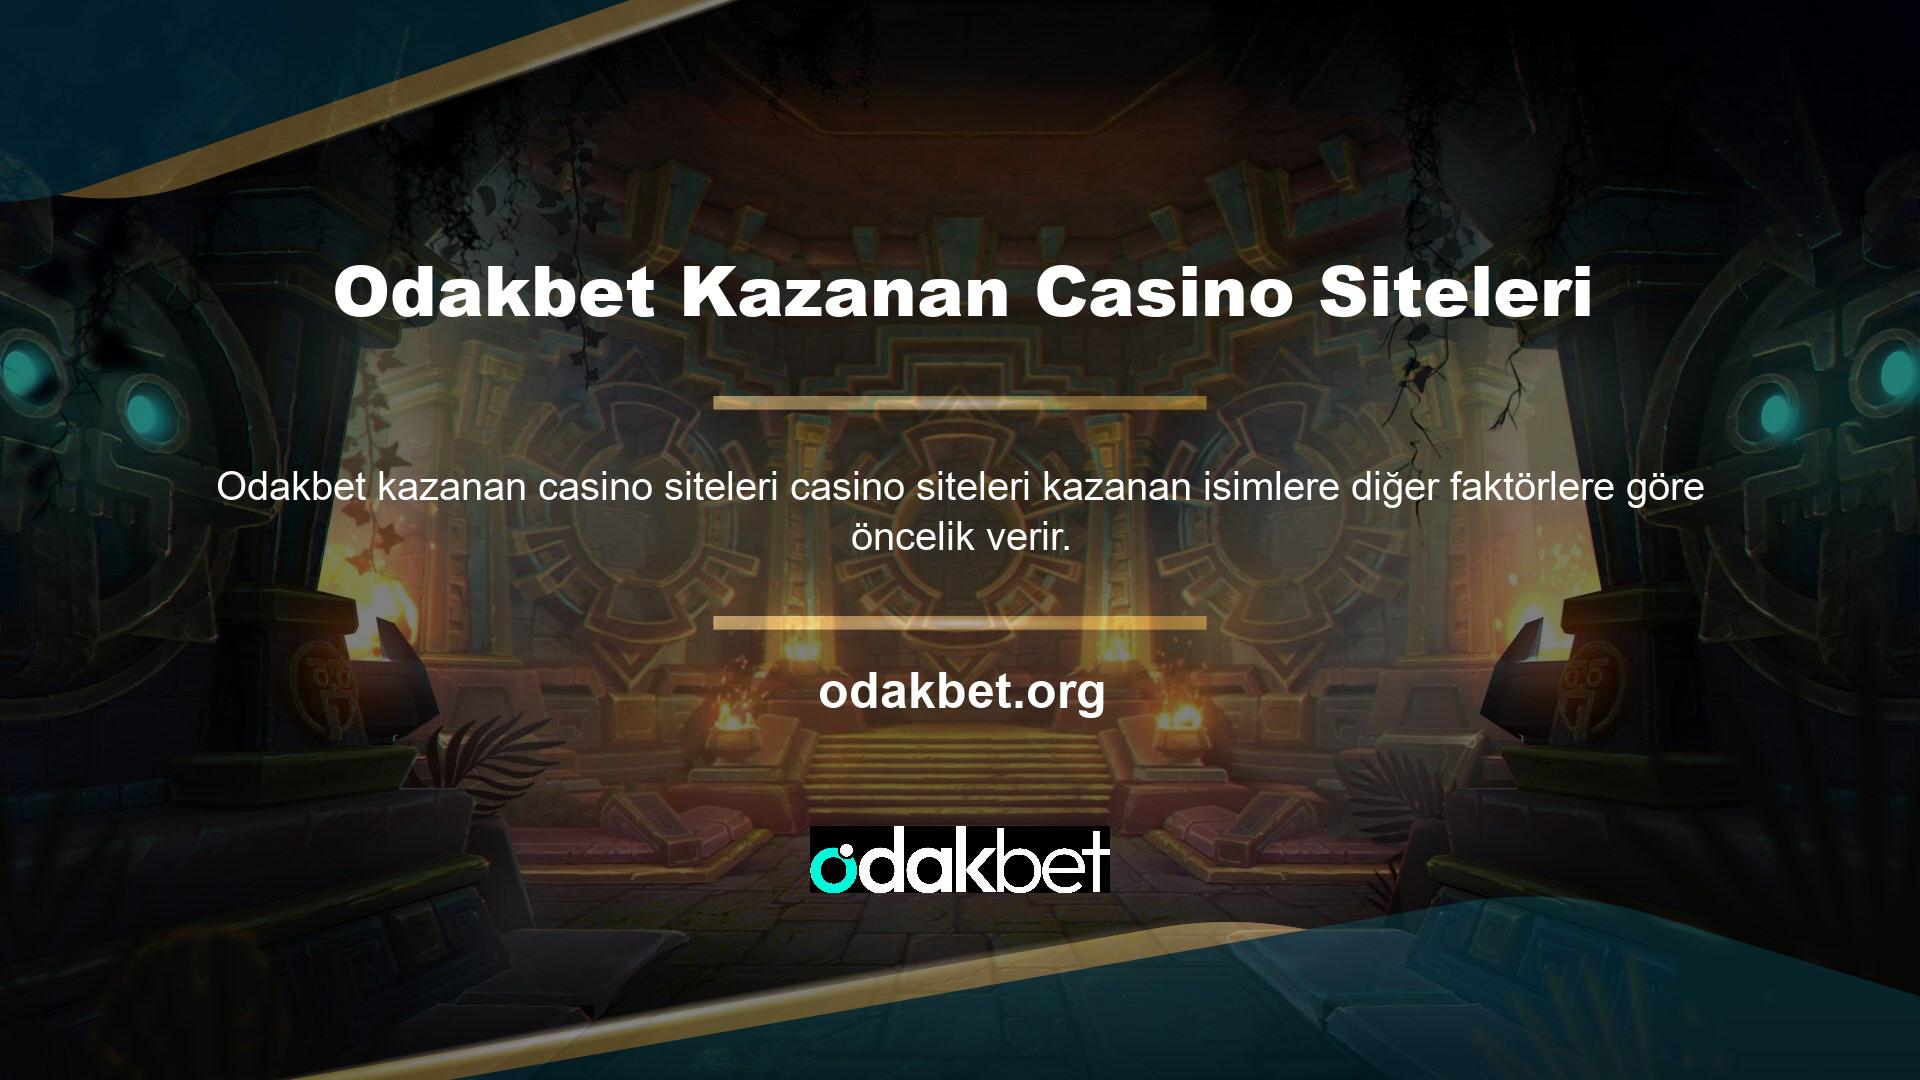 Odakbet kazanan casino sitelerinde en iyi slot oyunlarını seçmek çok önemlidir